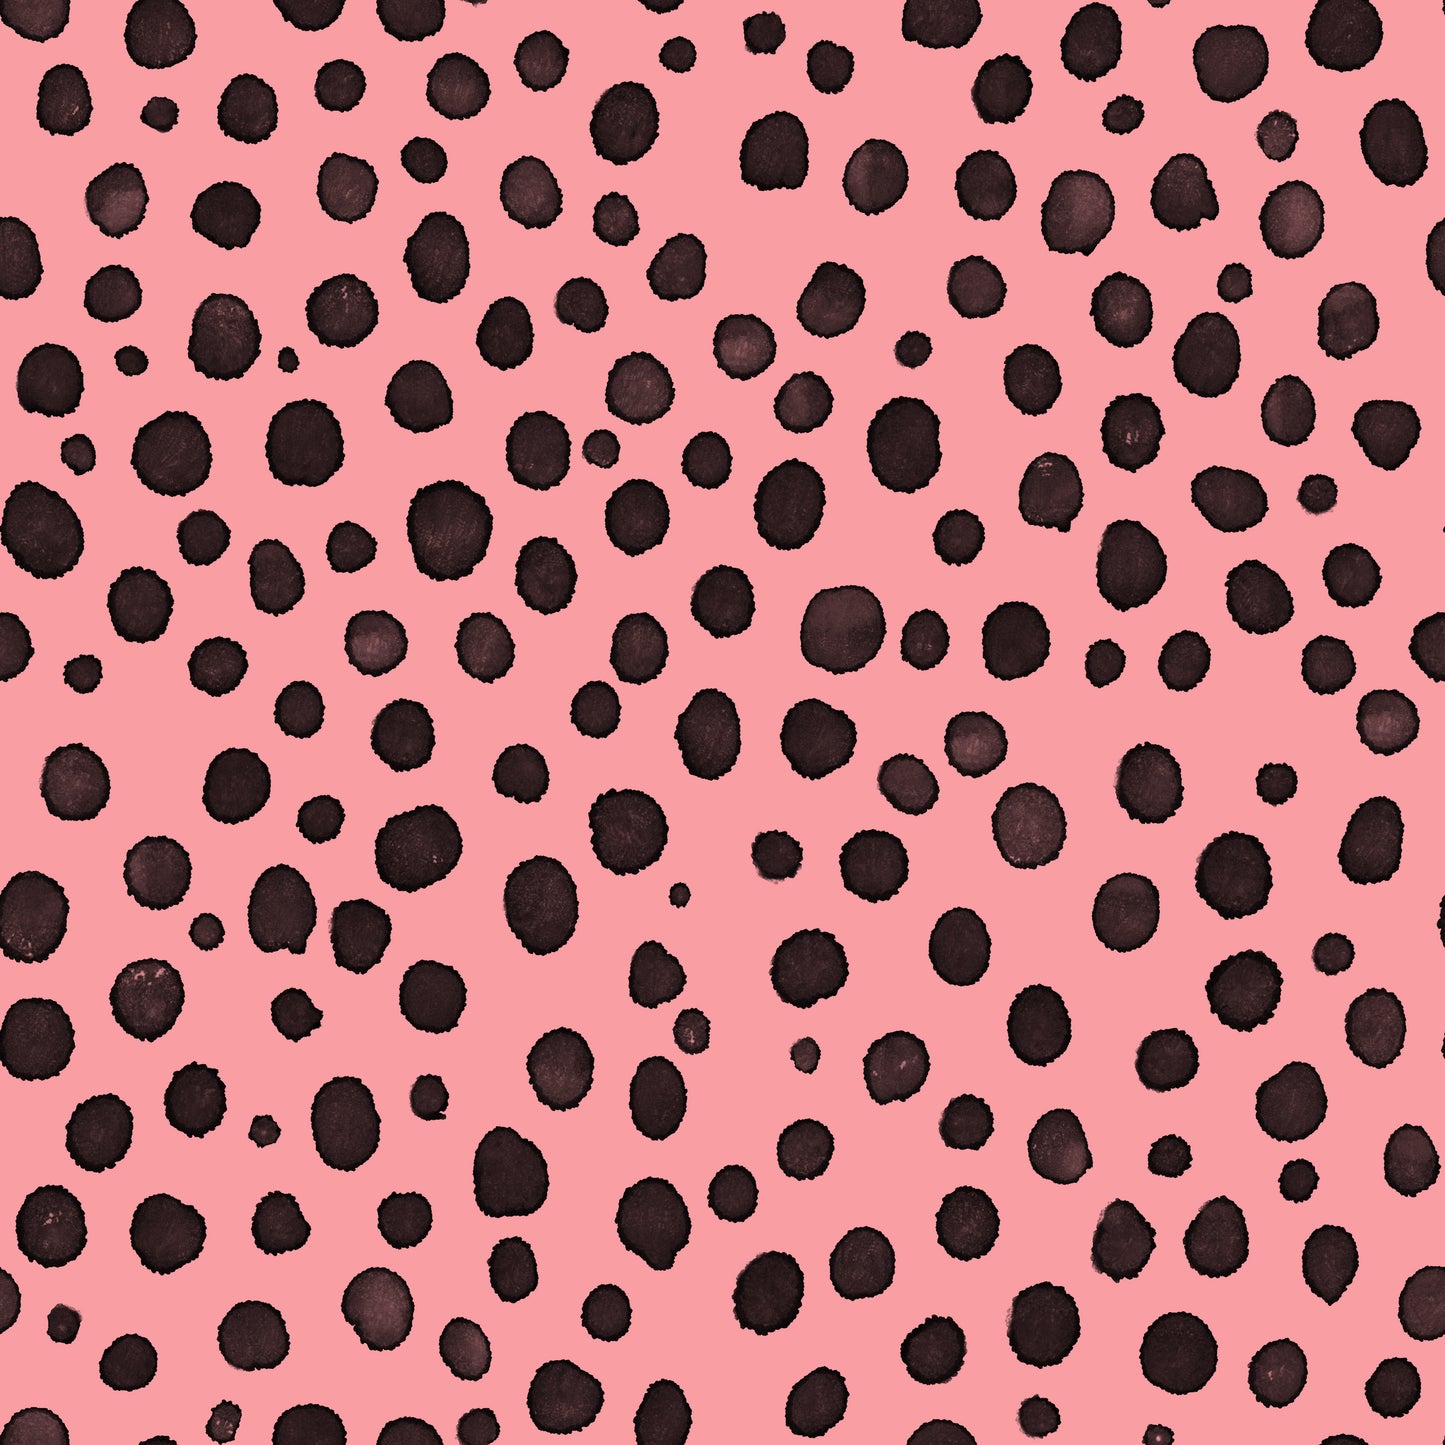 Pink and Black Cheetah Spots 2